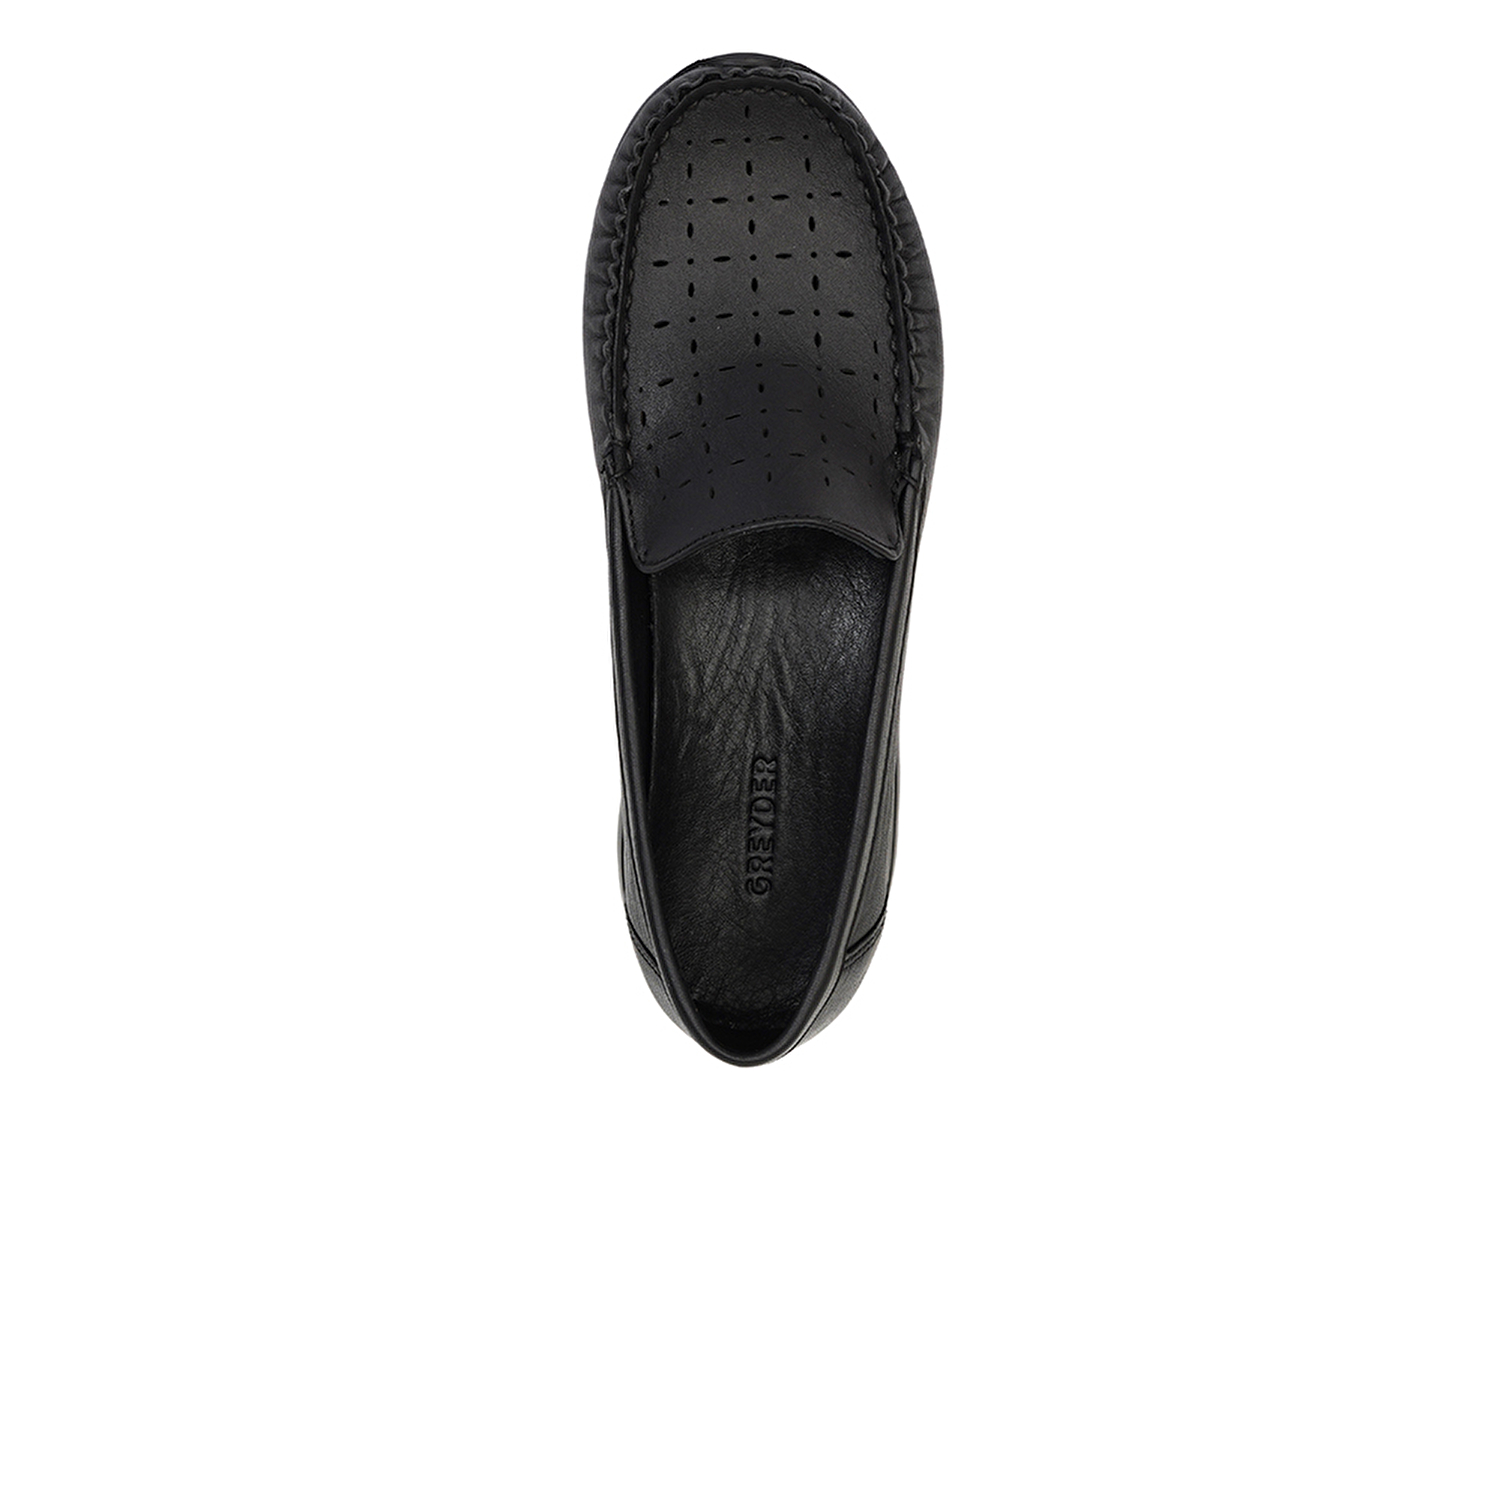 Kadın Siyah Hakiki Deri Comfort Ayakkabı 3Y2FA32400-3